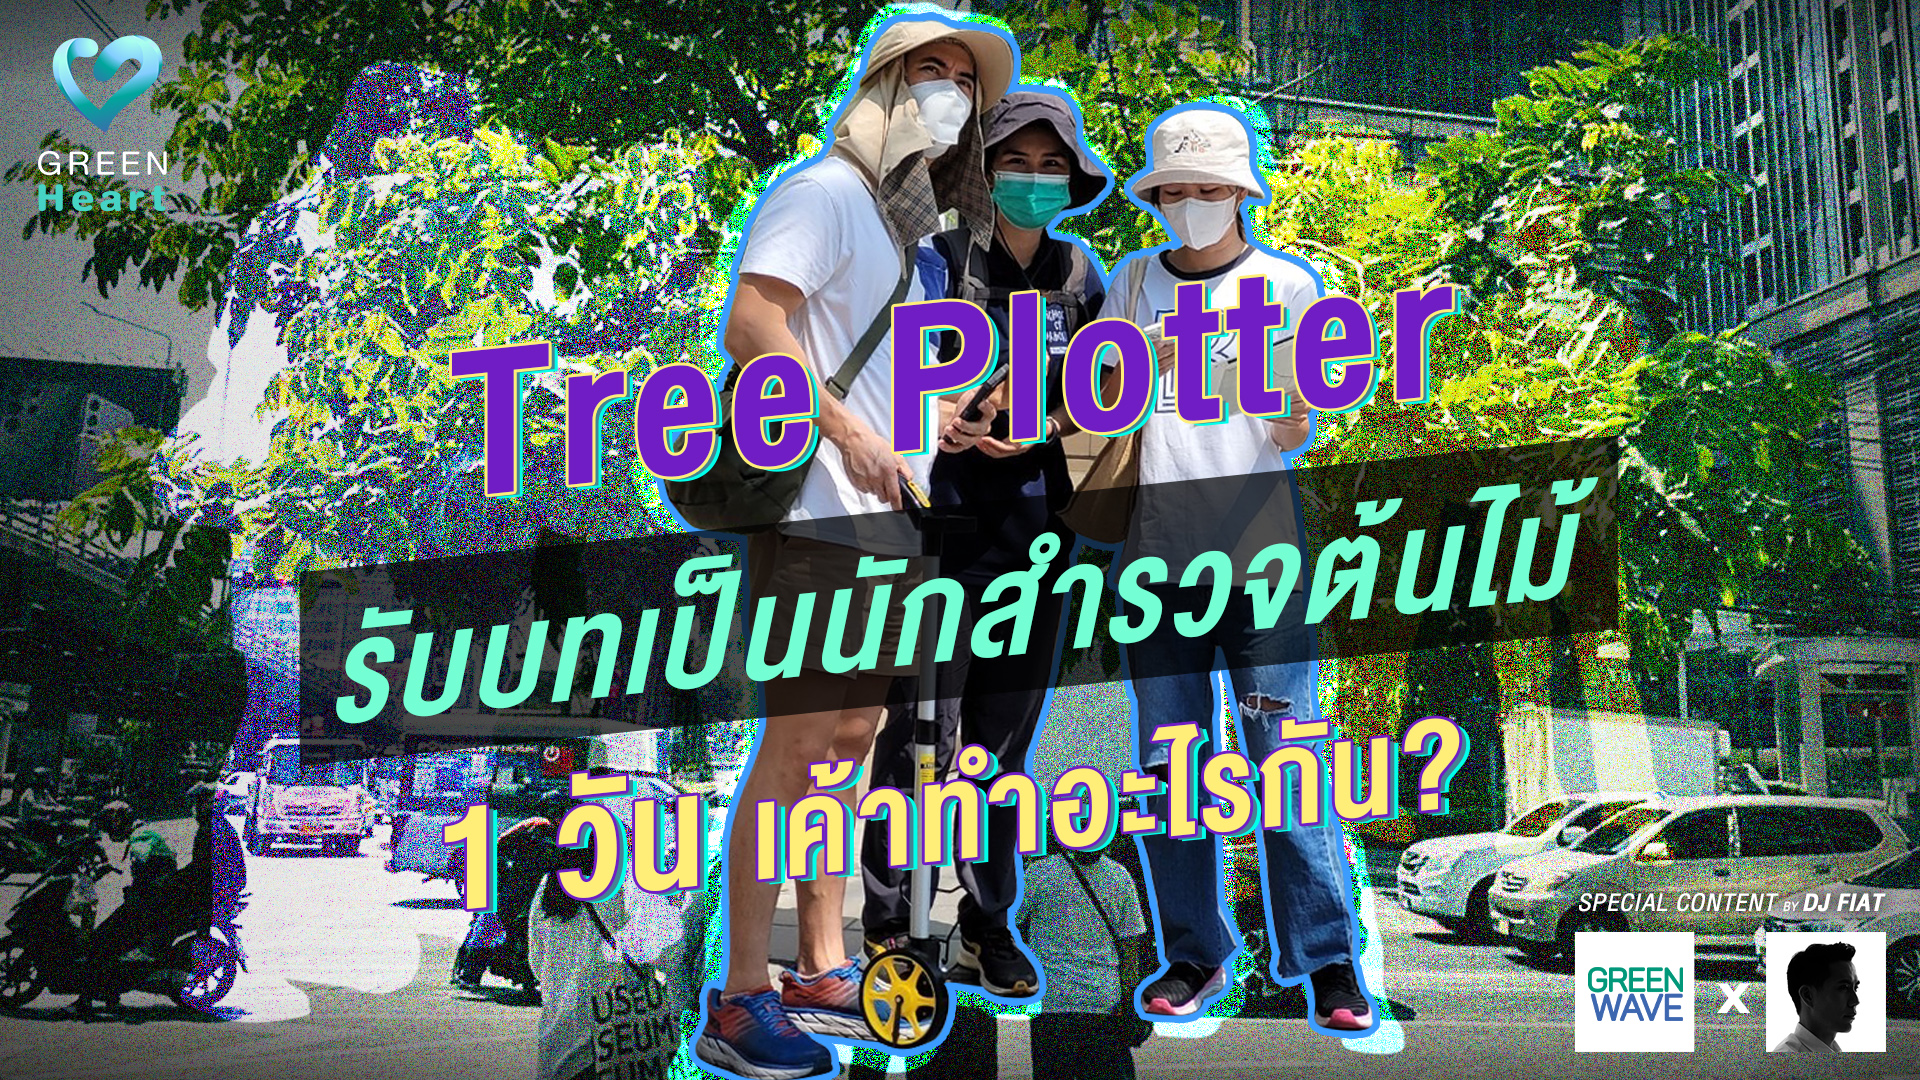 Tree Plotter รับบทเป็นนักสำรวจต้นไม้ 1 วัน เค้าทำอะไรกัน?